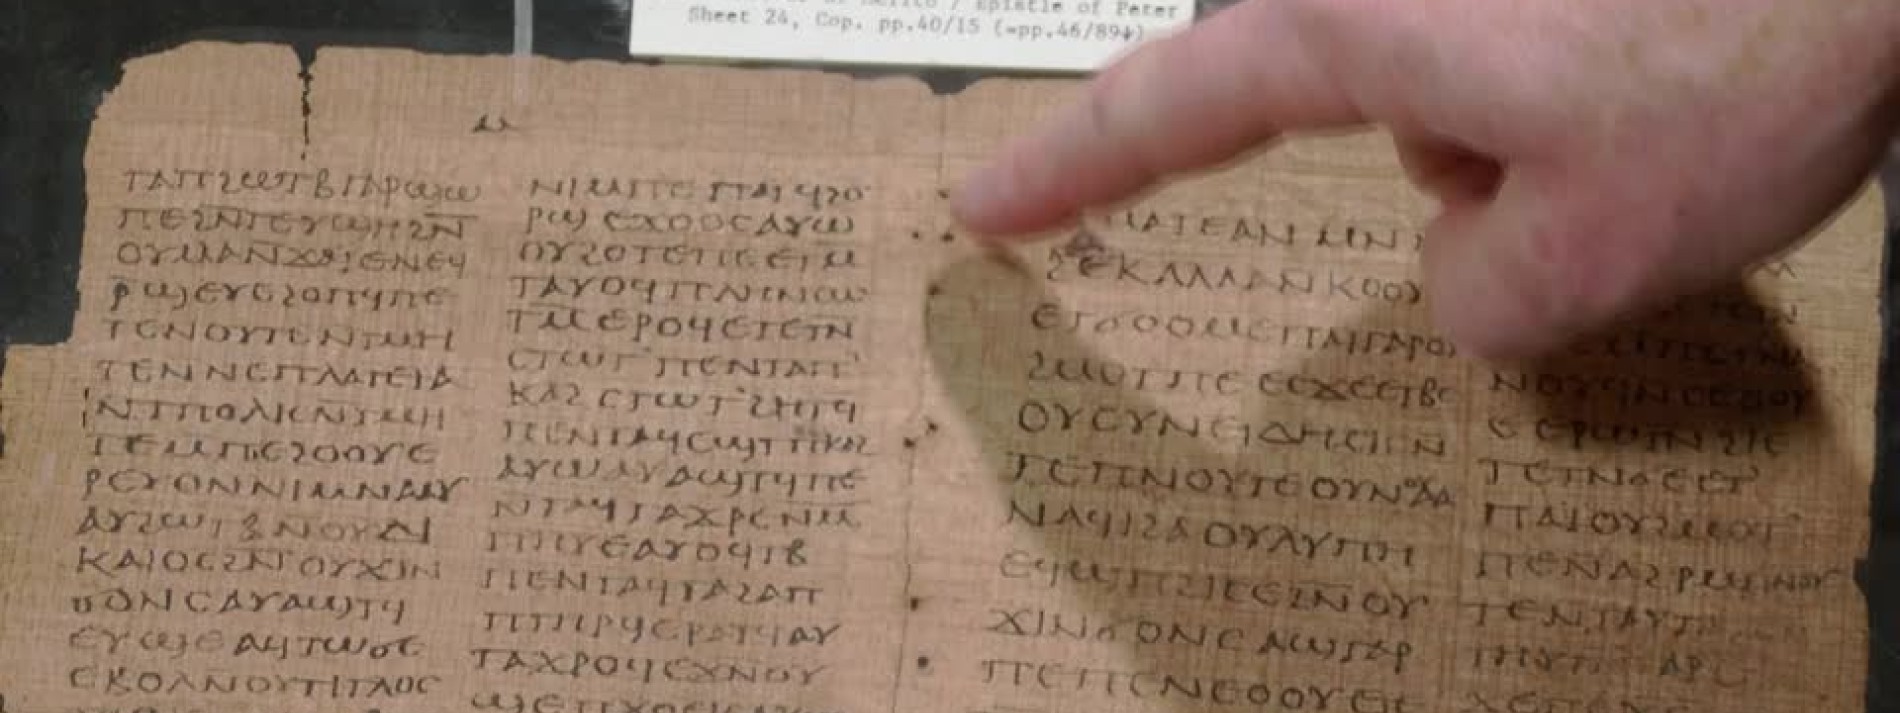 Eines der ältesten bekannten Bücher wird versteigert